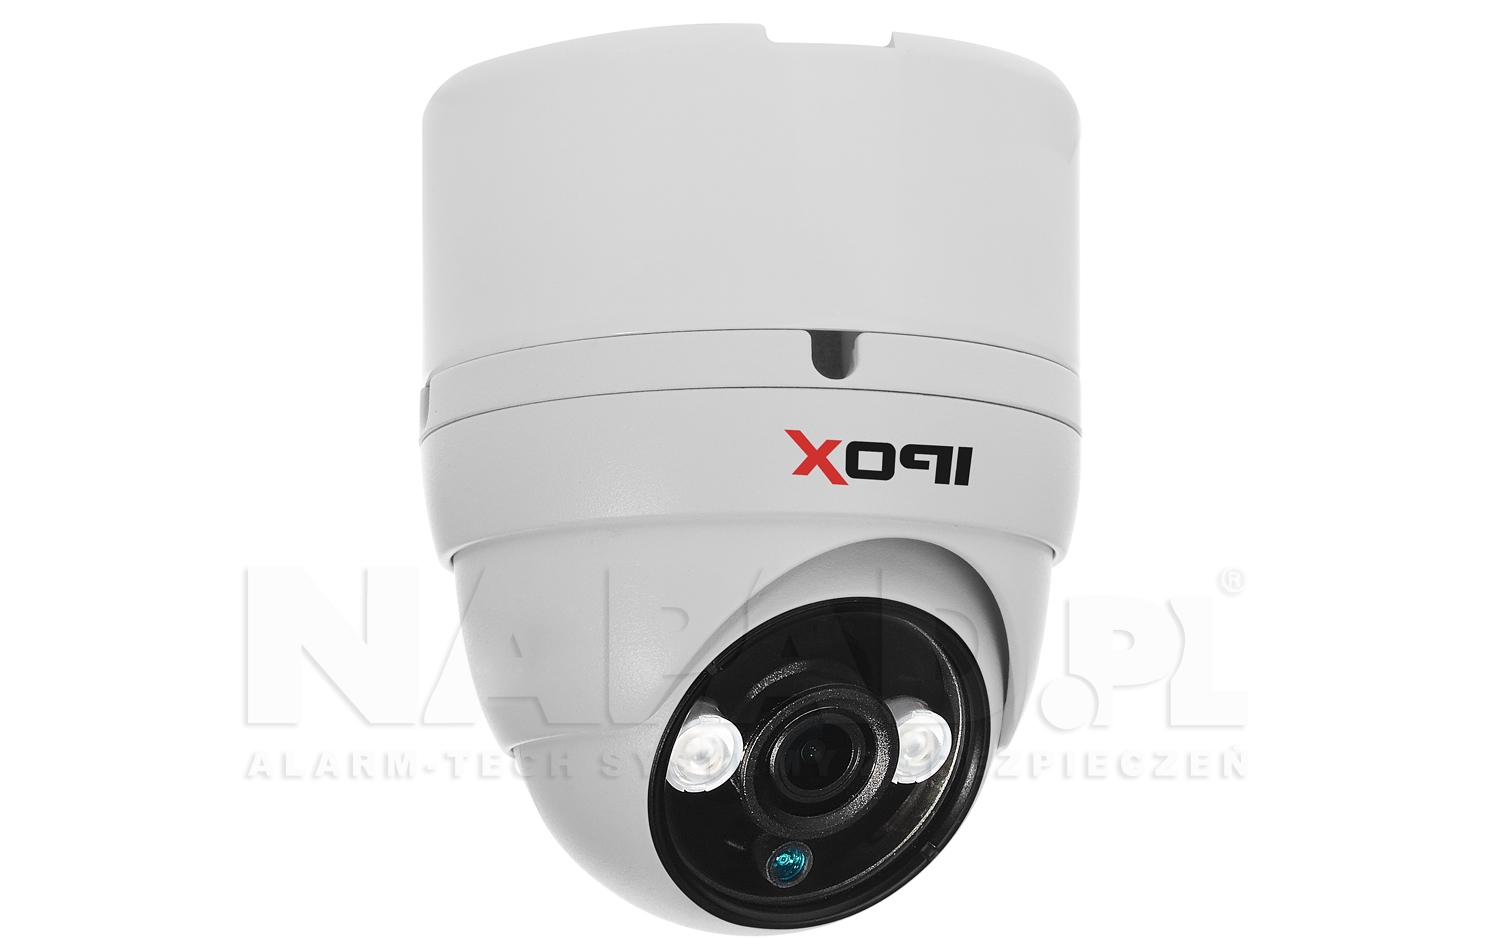 B220 - Przykład zastosowania z kamerą IPOX.